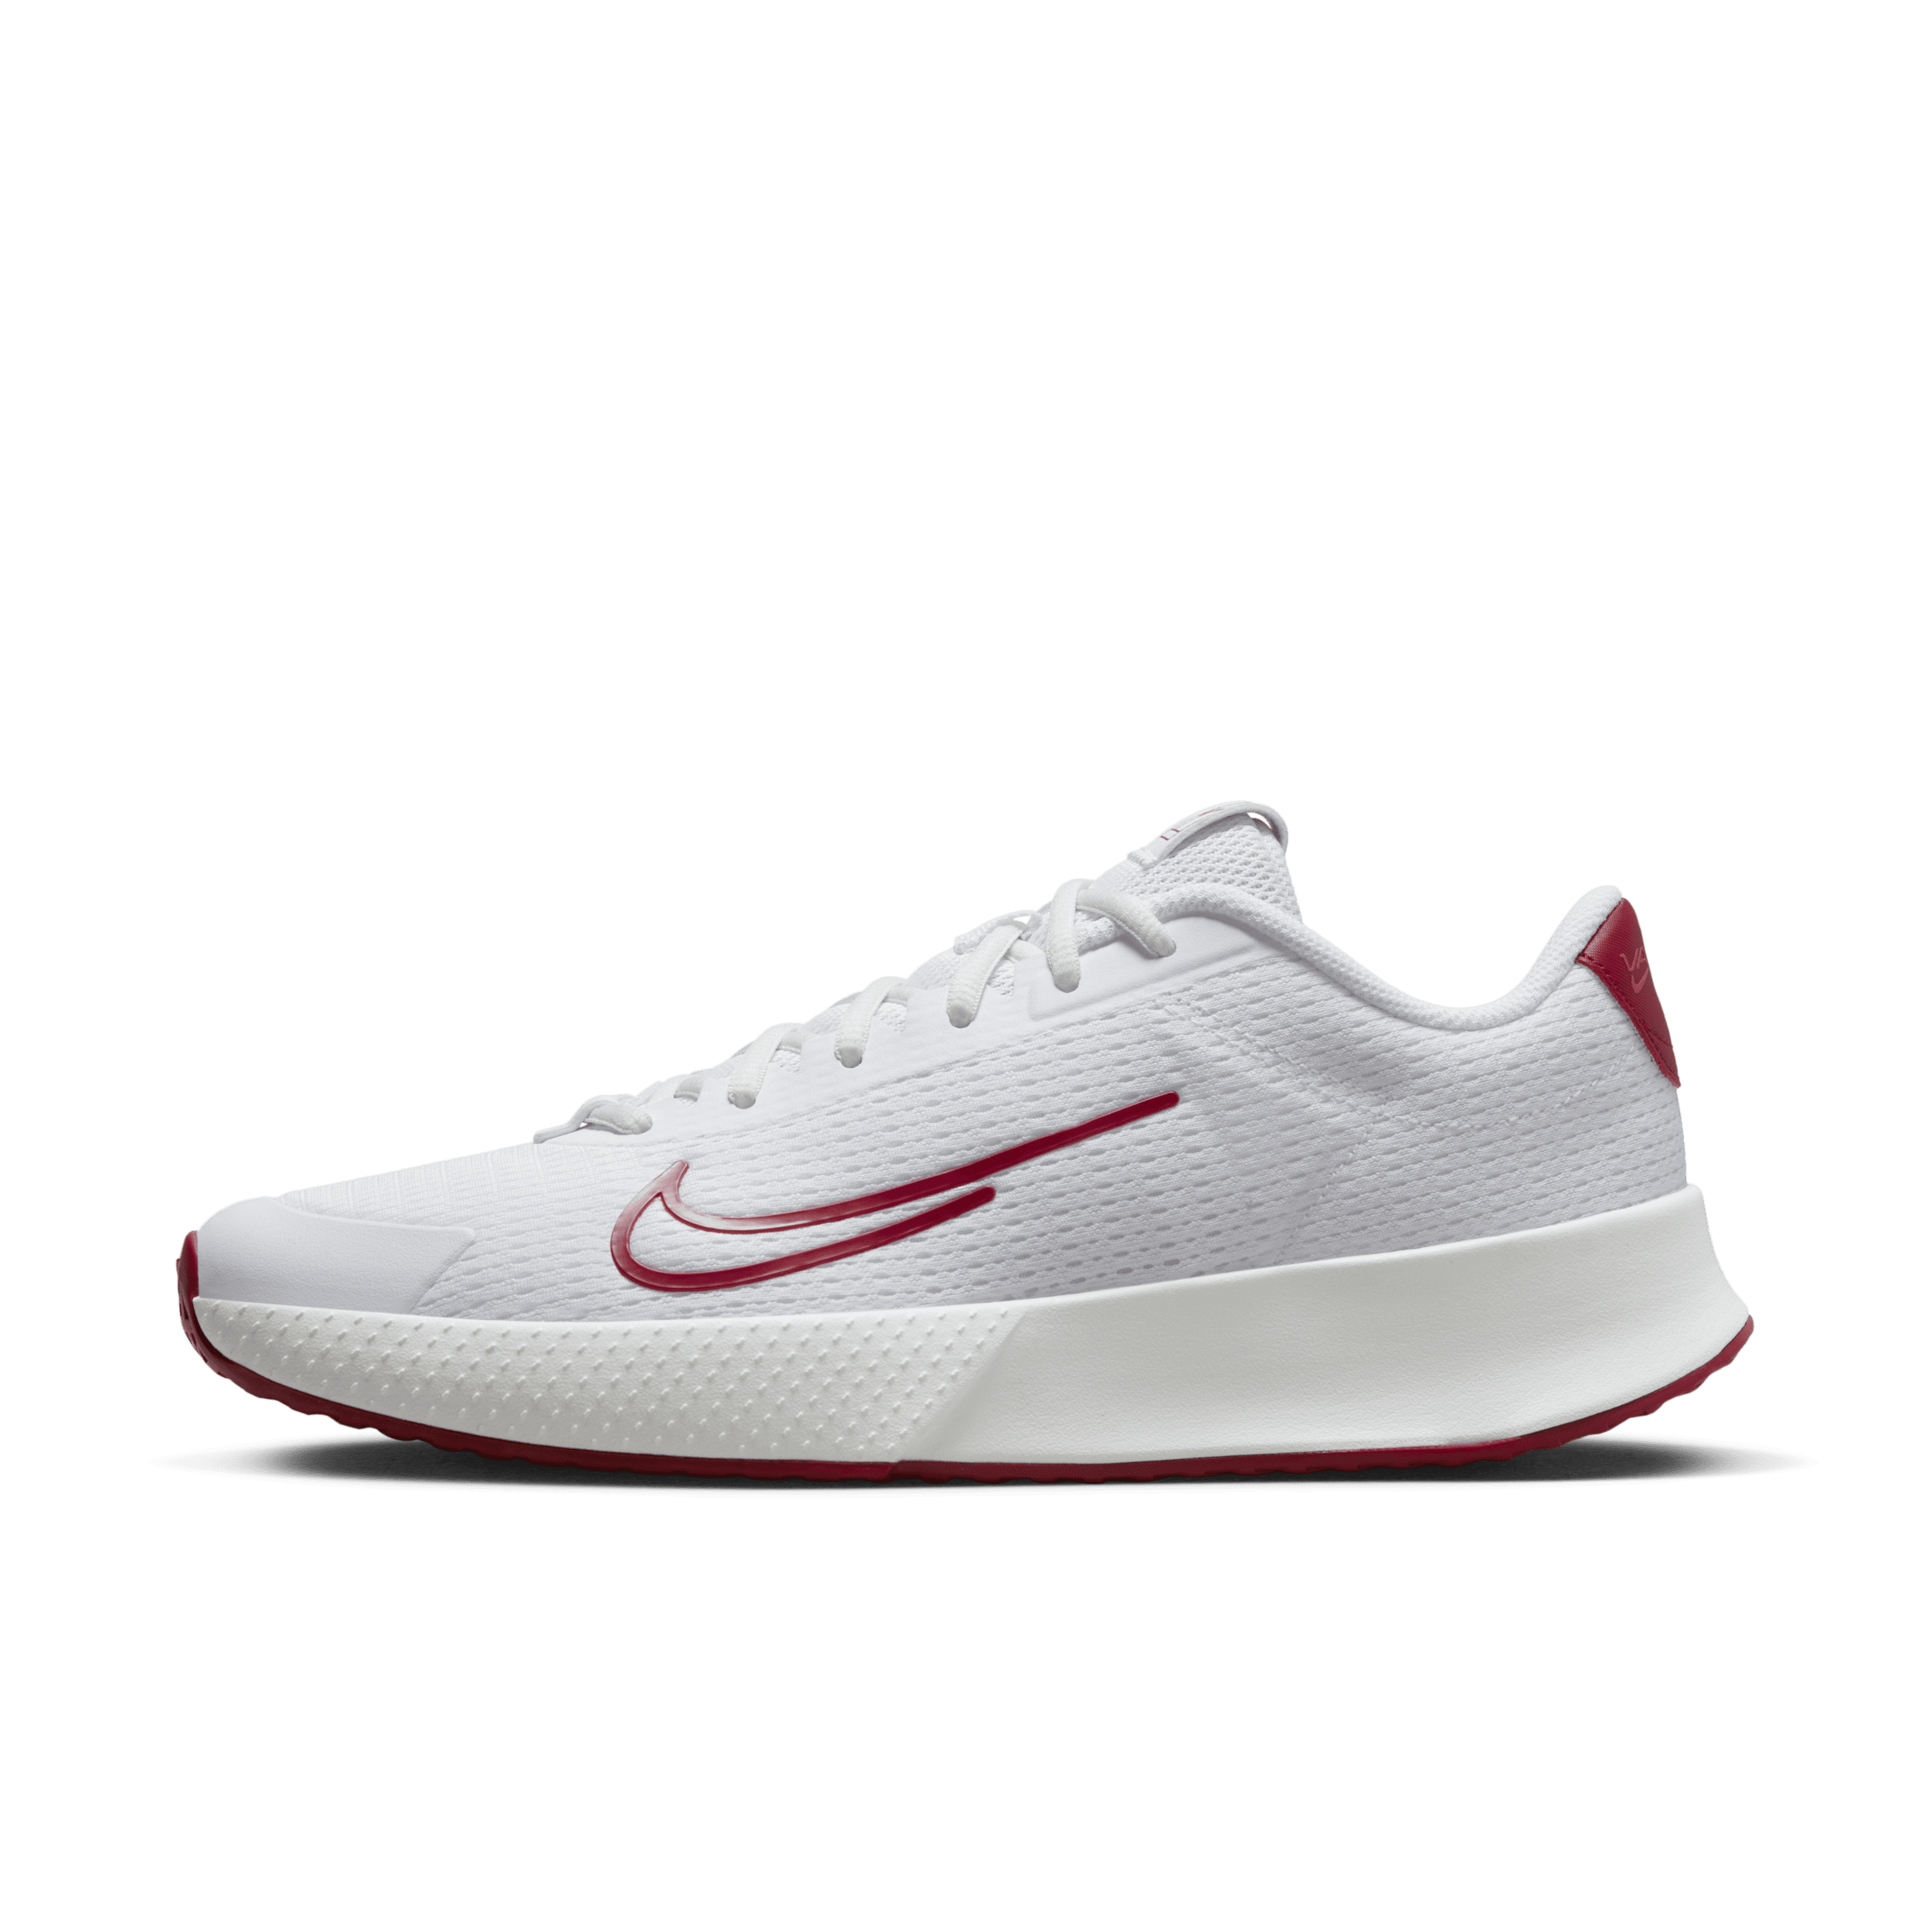 NikeCourt Vapor Lite 2-hardcourt-tennissko til mænd - hvid